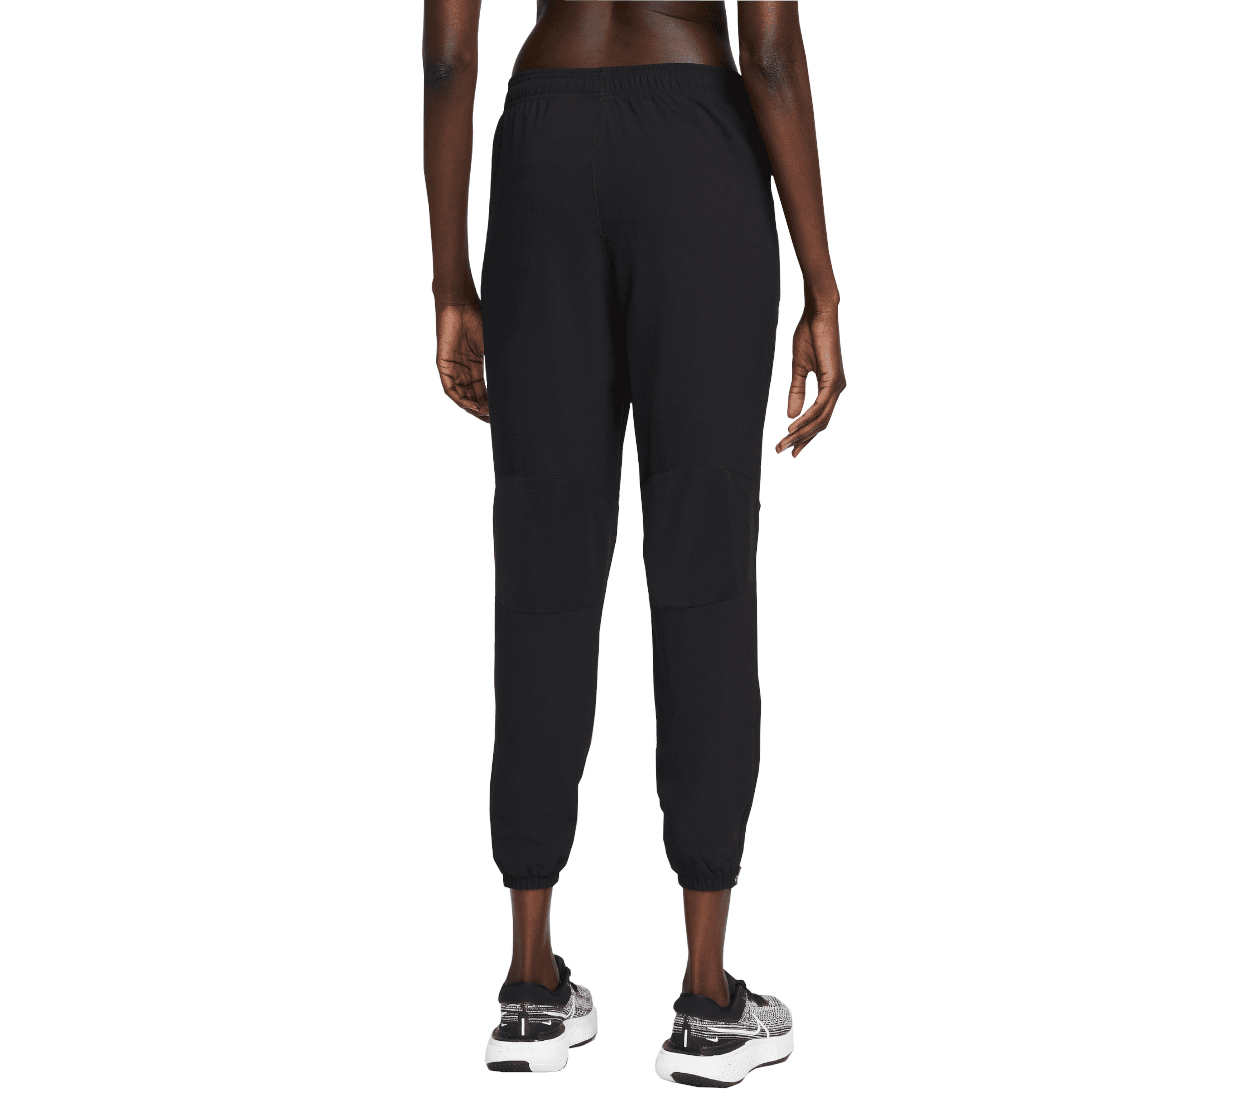 Nike Dri-fit Air Pant (W) pantalone comodi e traspiranti | LBM Sport